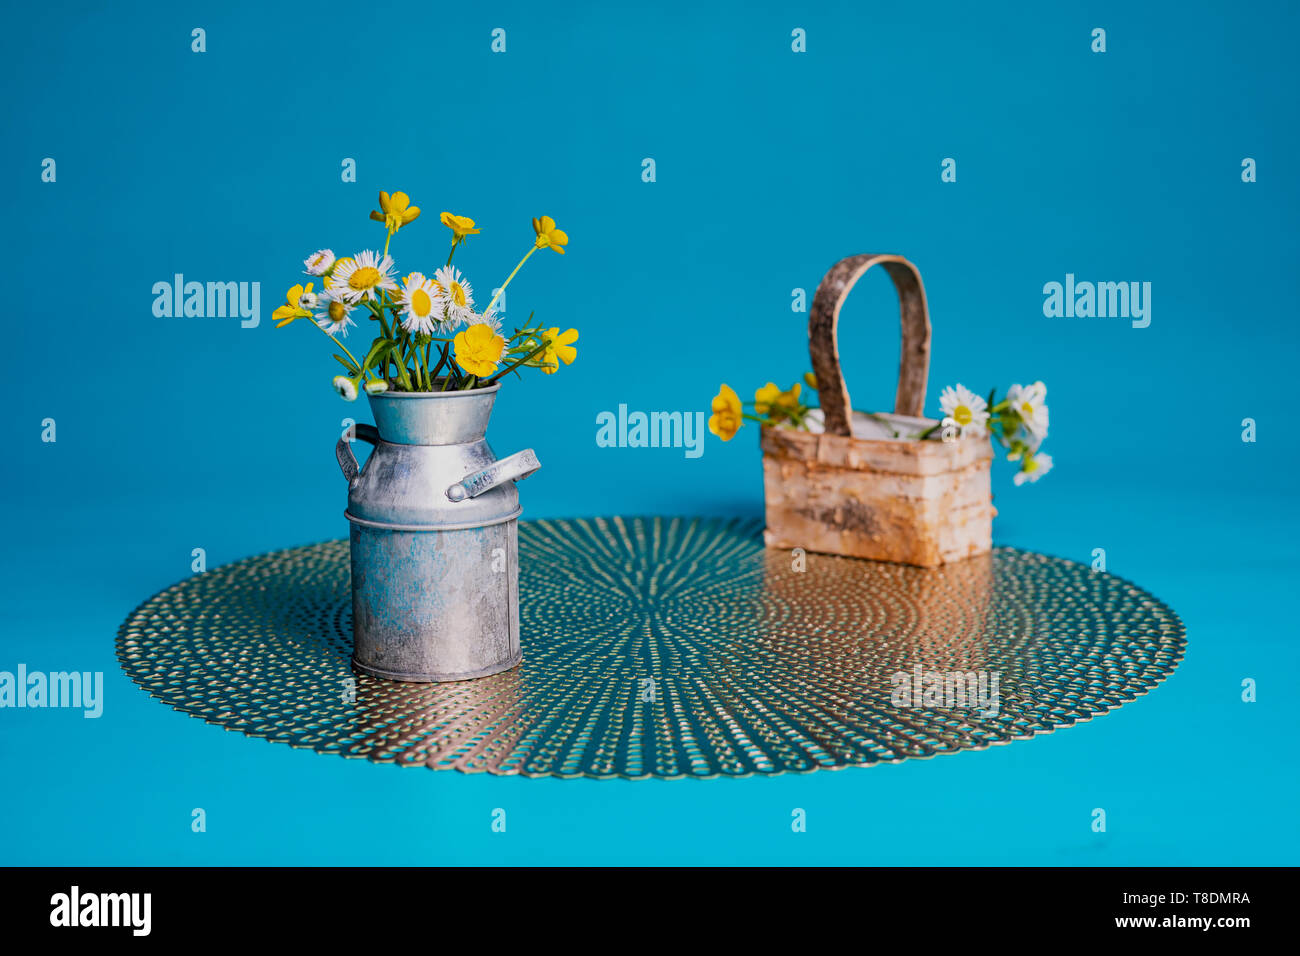 Haarige buttercup und Prairie fleabane Wildblumen in einer Miniatur Milch kann und Korb. Das Sitzen auf einer Unterlage gegen eine hellblaue Hintergrund. Stockfoto